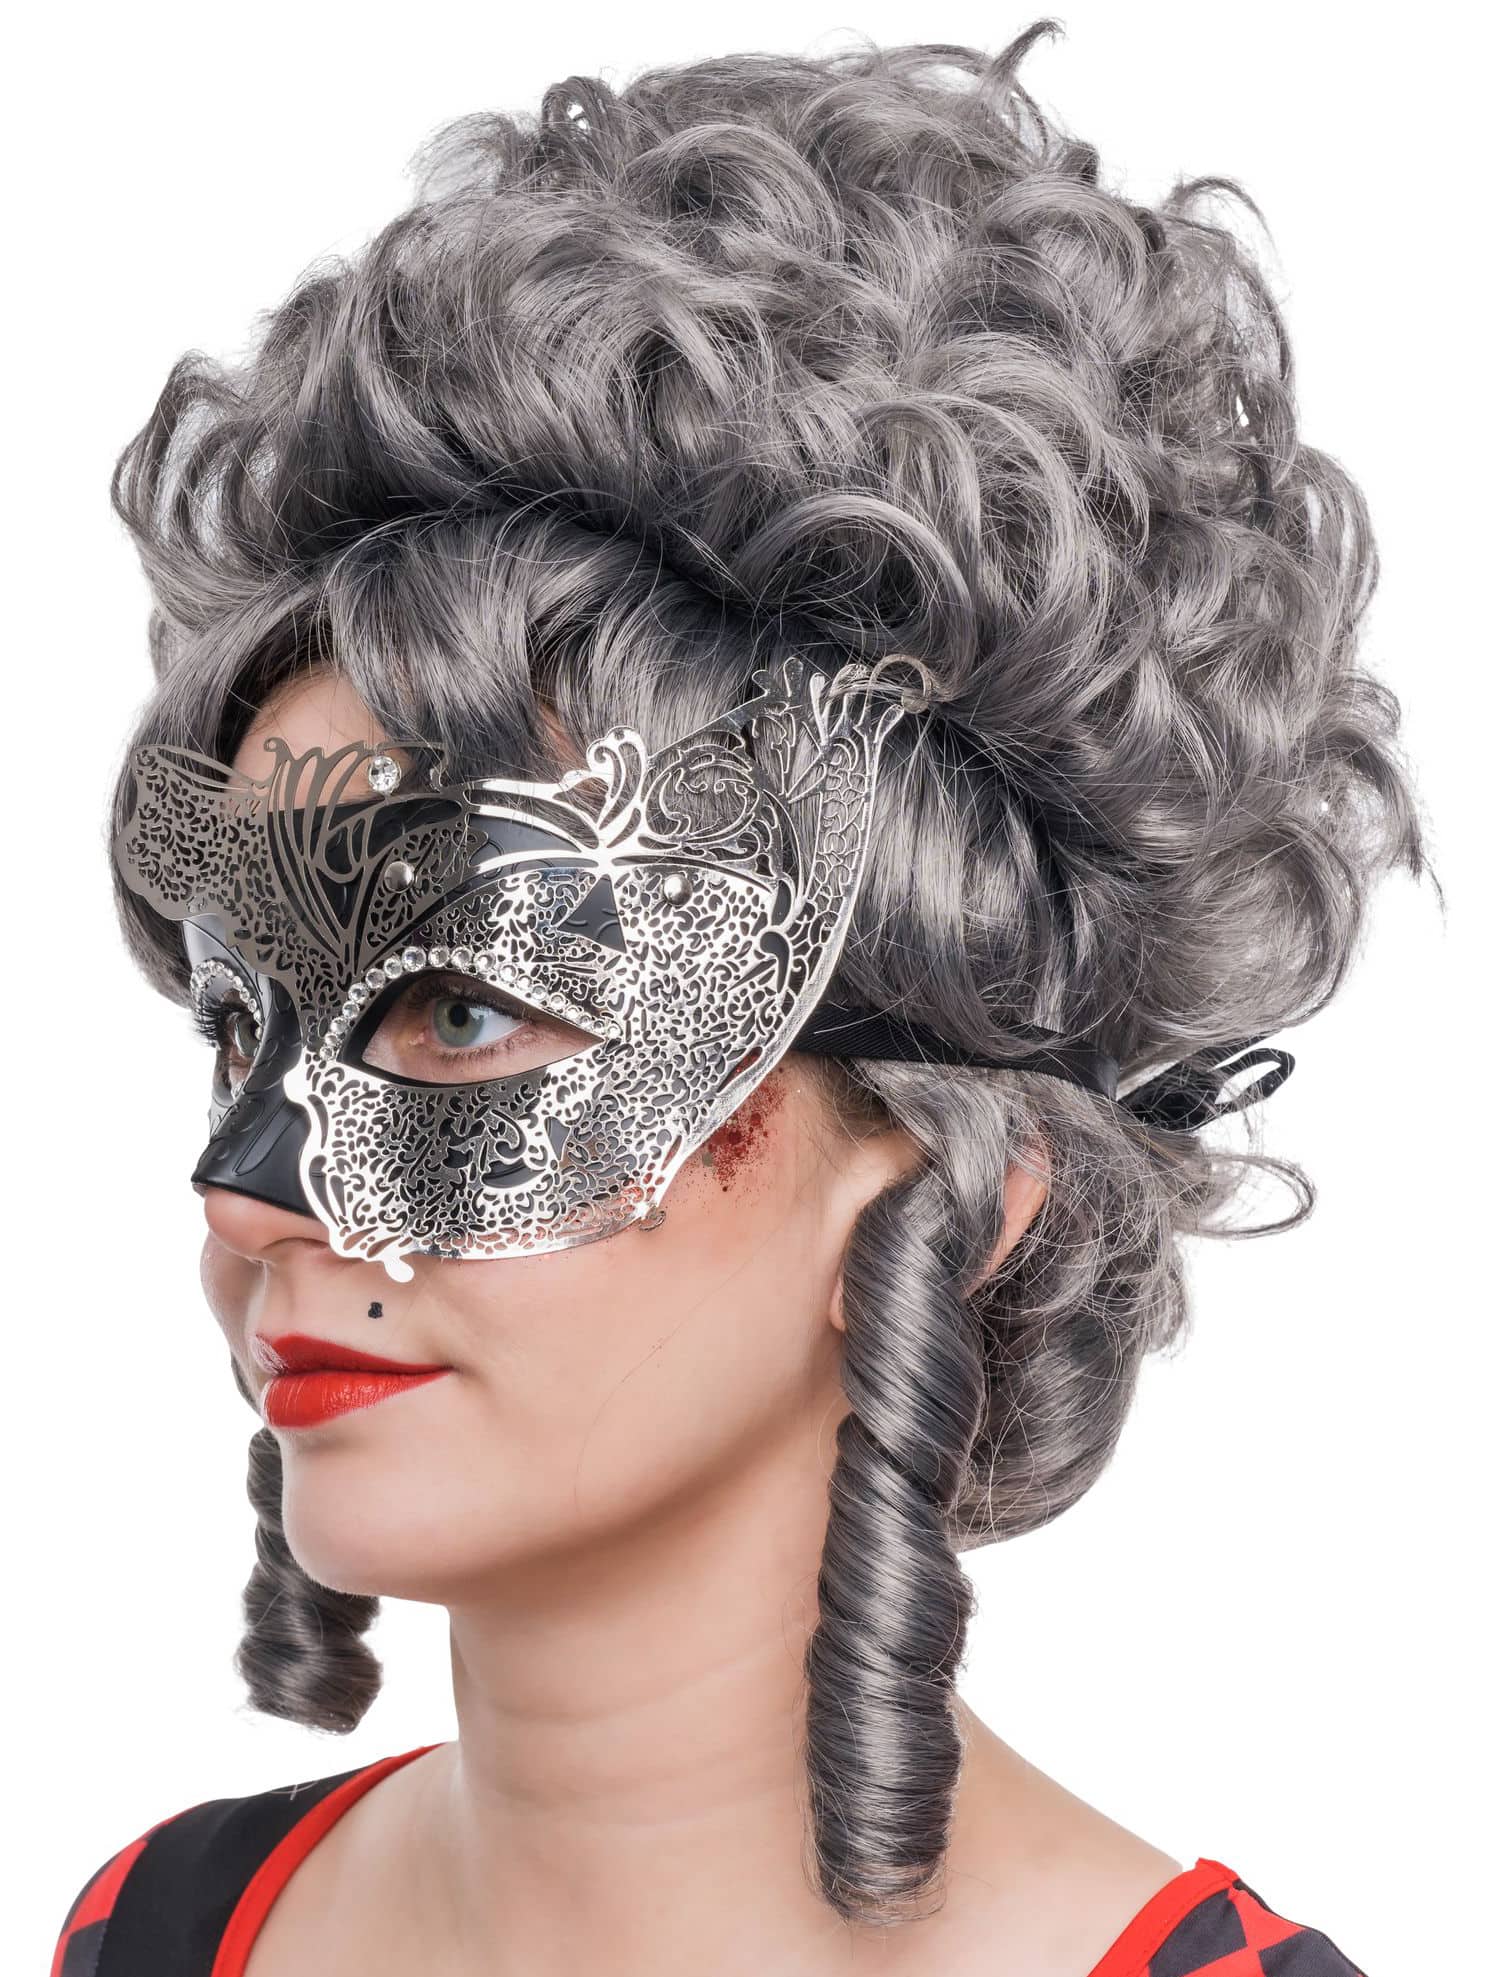 Augenmaske aus Metall zweifarbig schwarz/silber